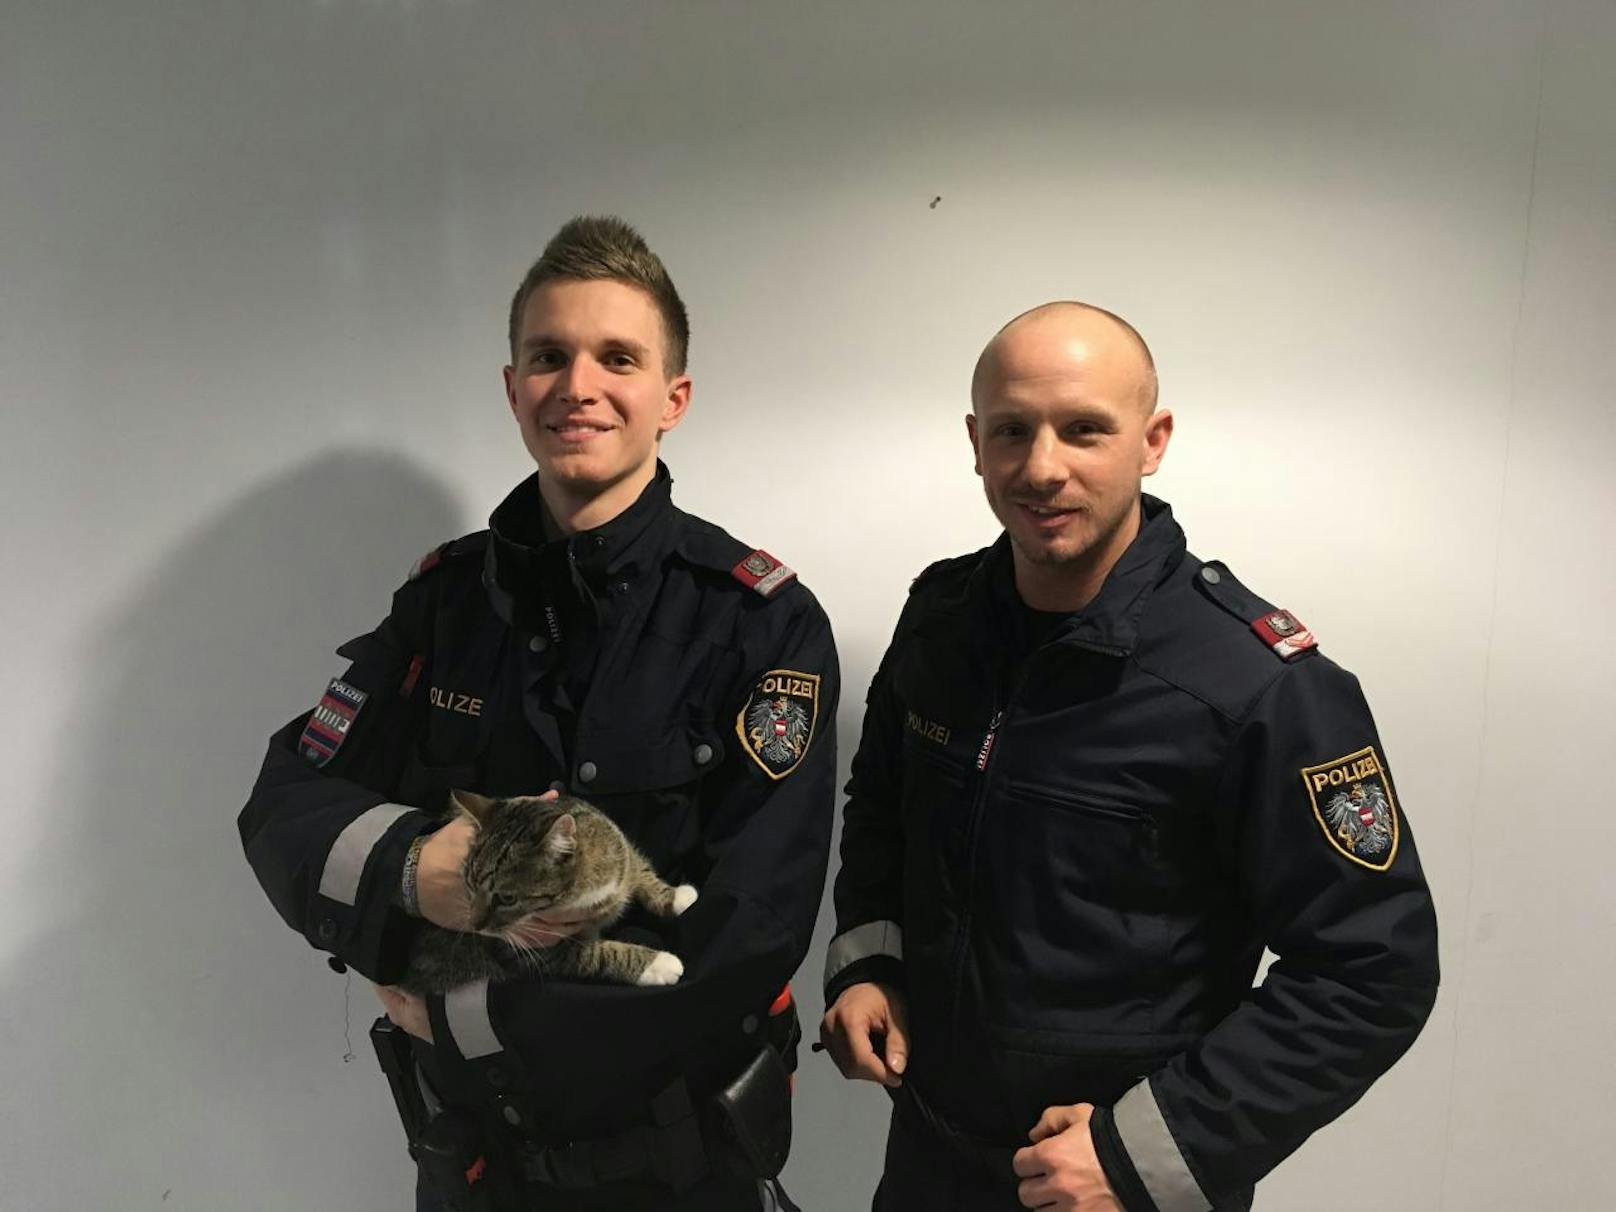 Inspektor Sebastian P. (links) und Inspektor Gregor K. (rechts) bemerkten bei ihrem Streifendienst den Korb mit der ausgesetzten Katze.